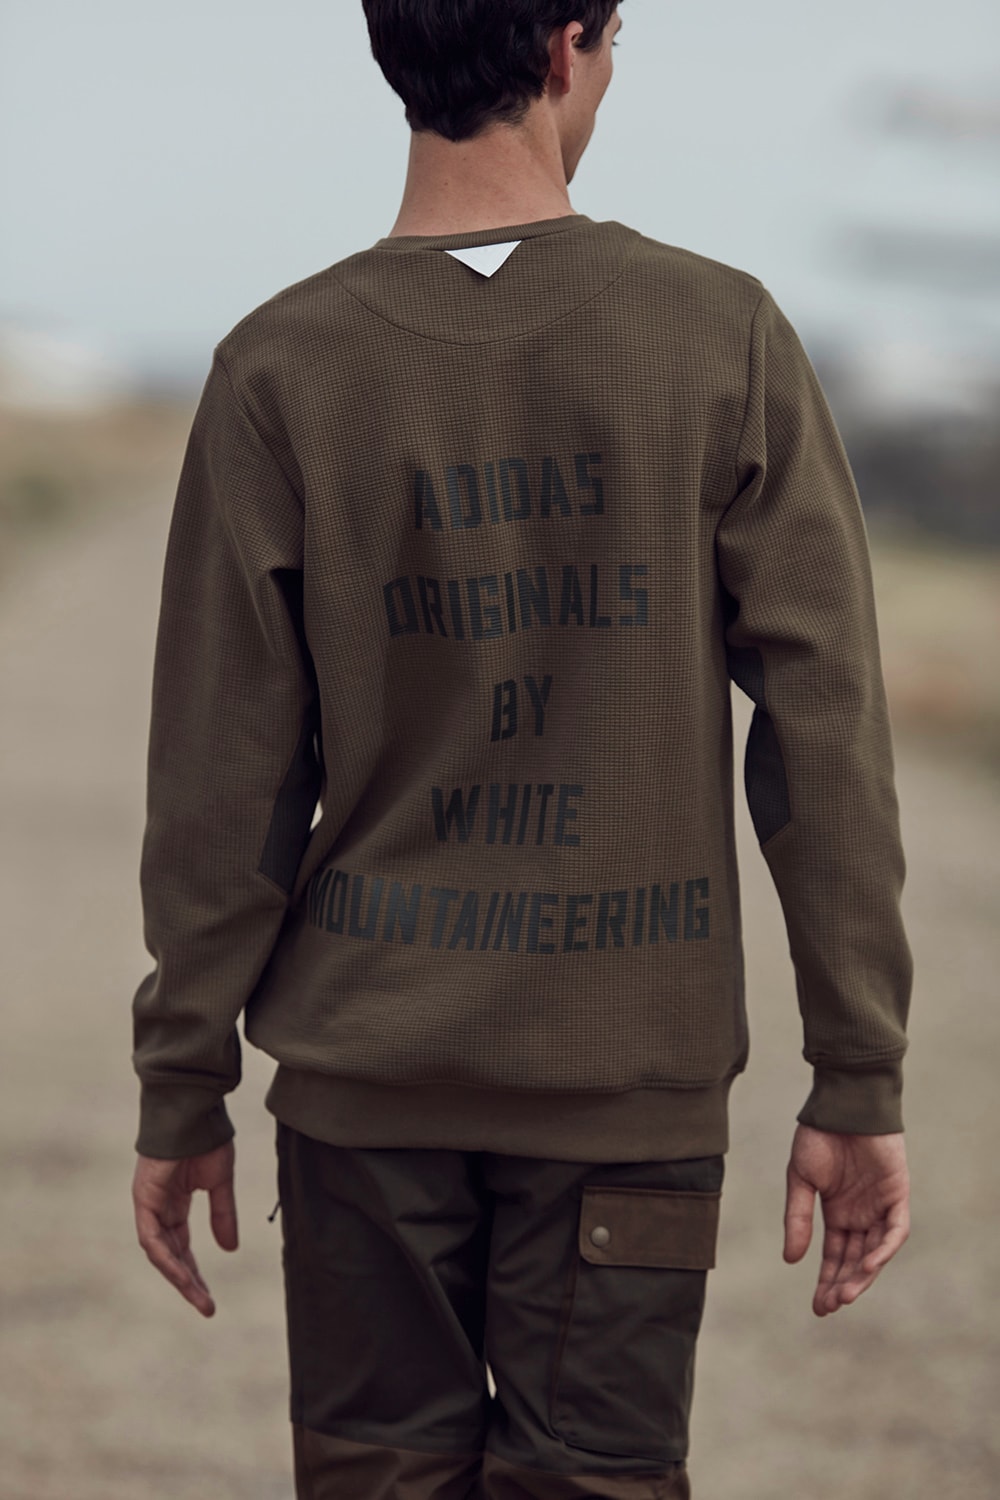 아디다스 화이트 마운티니어링 2017 가을 겨울 컬렉션 adidas originals white mountaineering fall winter